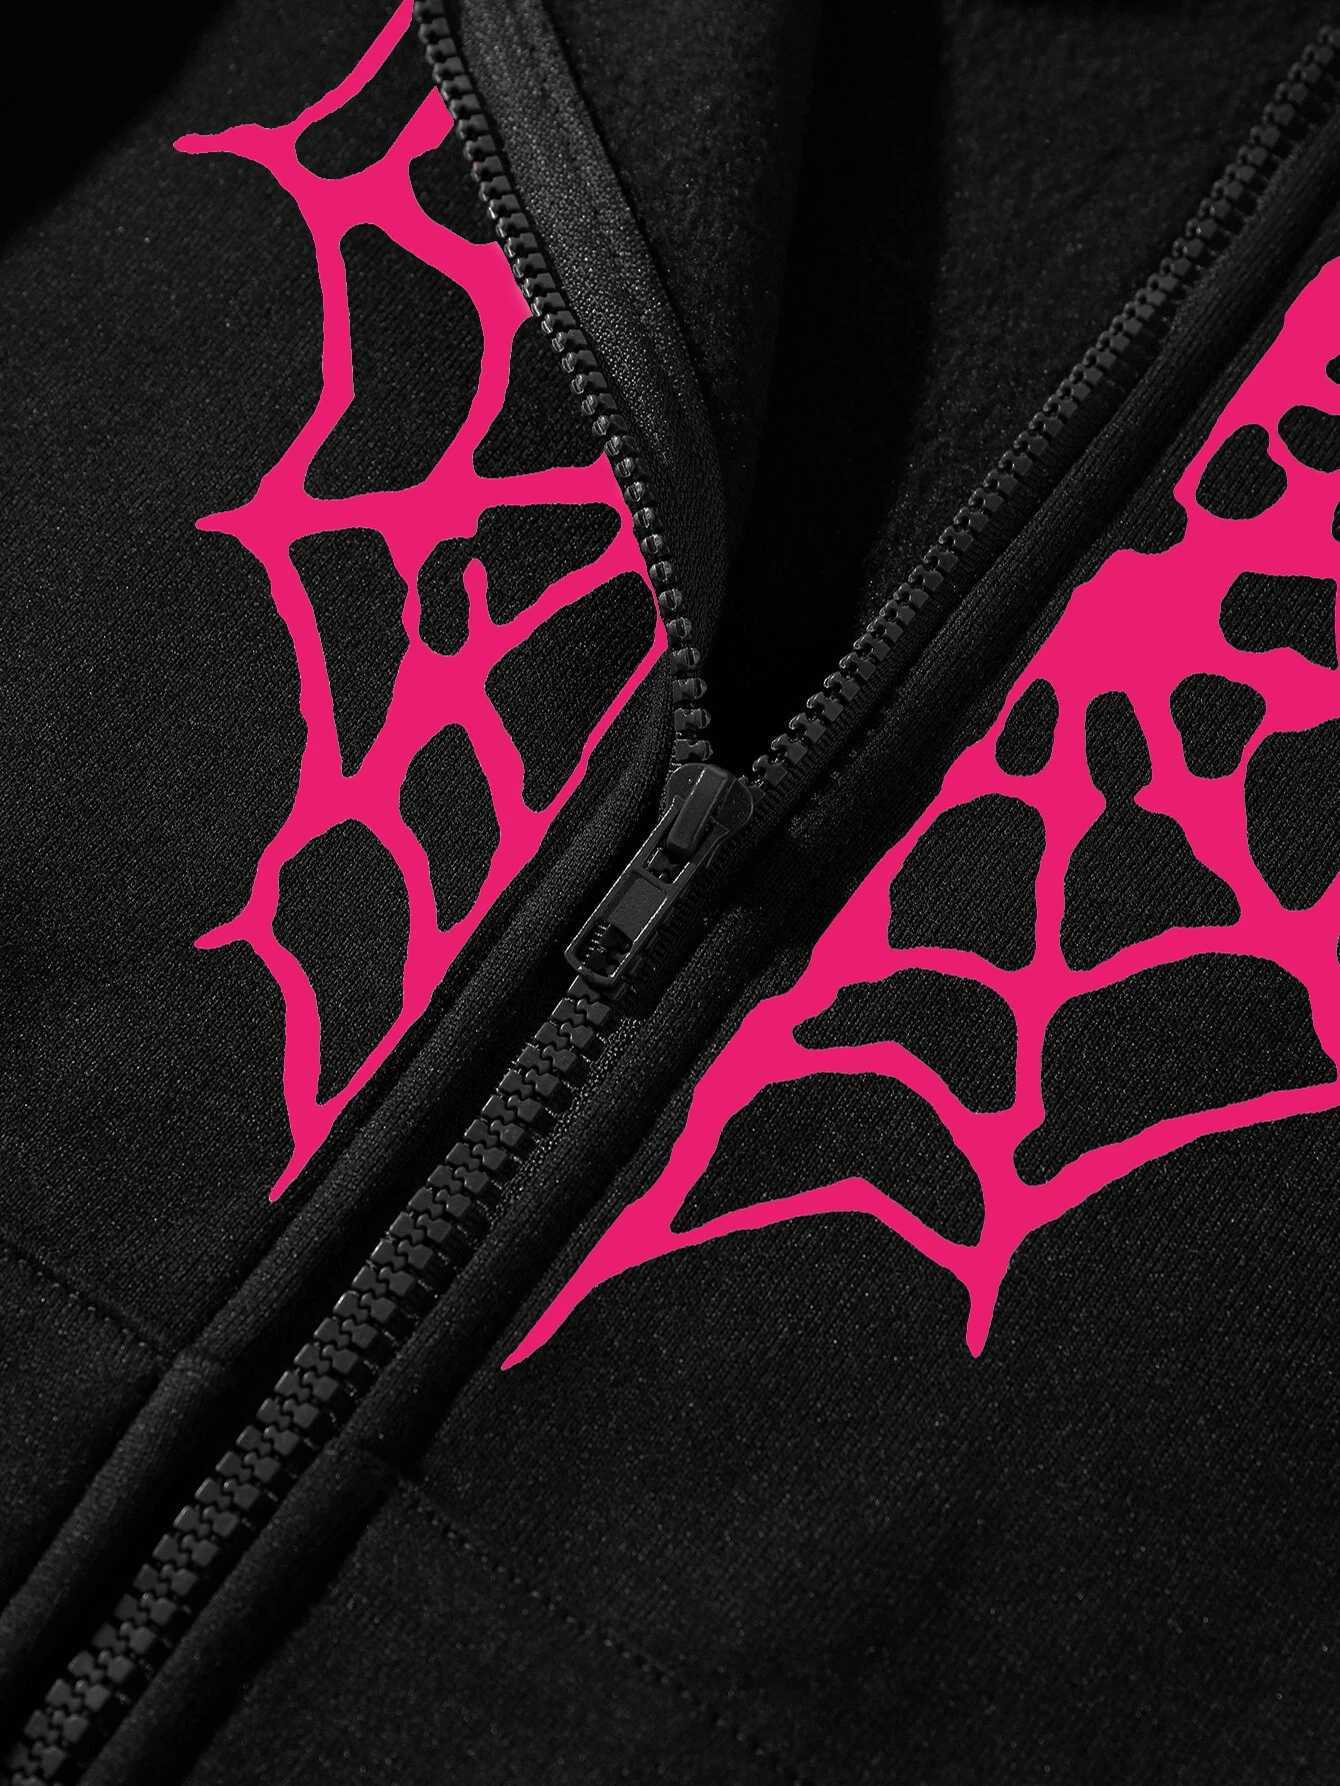 Sweats à capuche pour femmes Sweat-shirts Spider Web Heart Impression Zipper Sweat à capuche thermique Femmes Hiver Chaud Polaire Street Vêtements Casual Sportswears Femme 24328